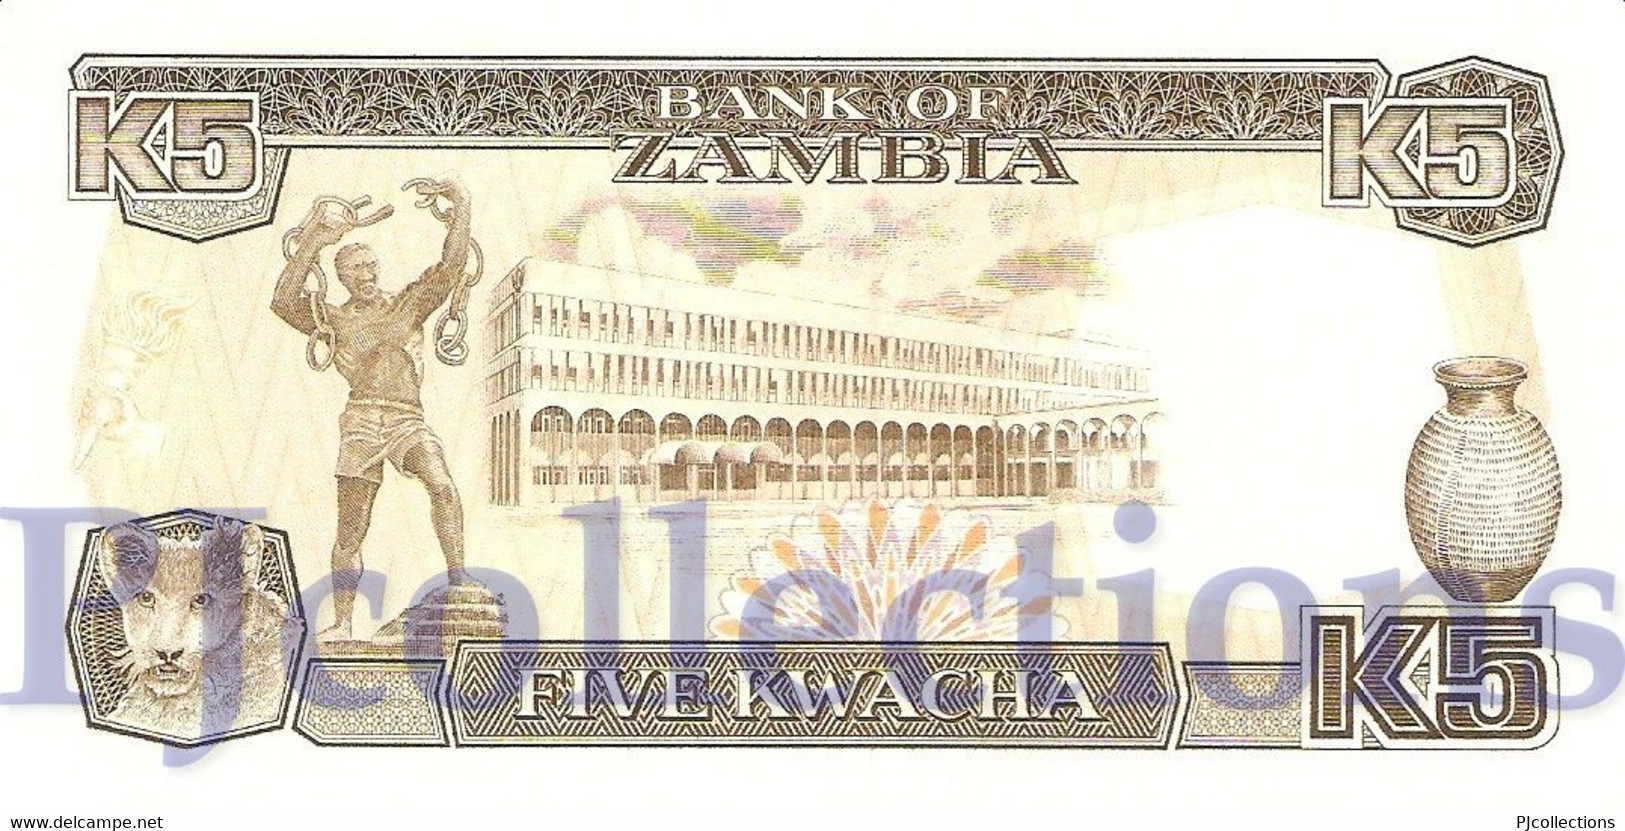 ZAMBIA 5 KWACHA 1989 PICK 30a UNC - Zambie